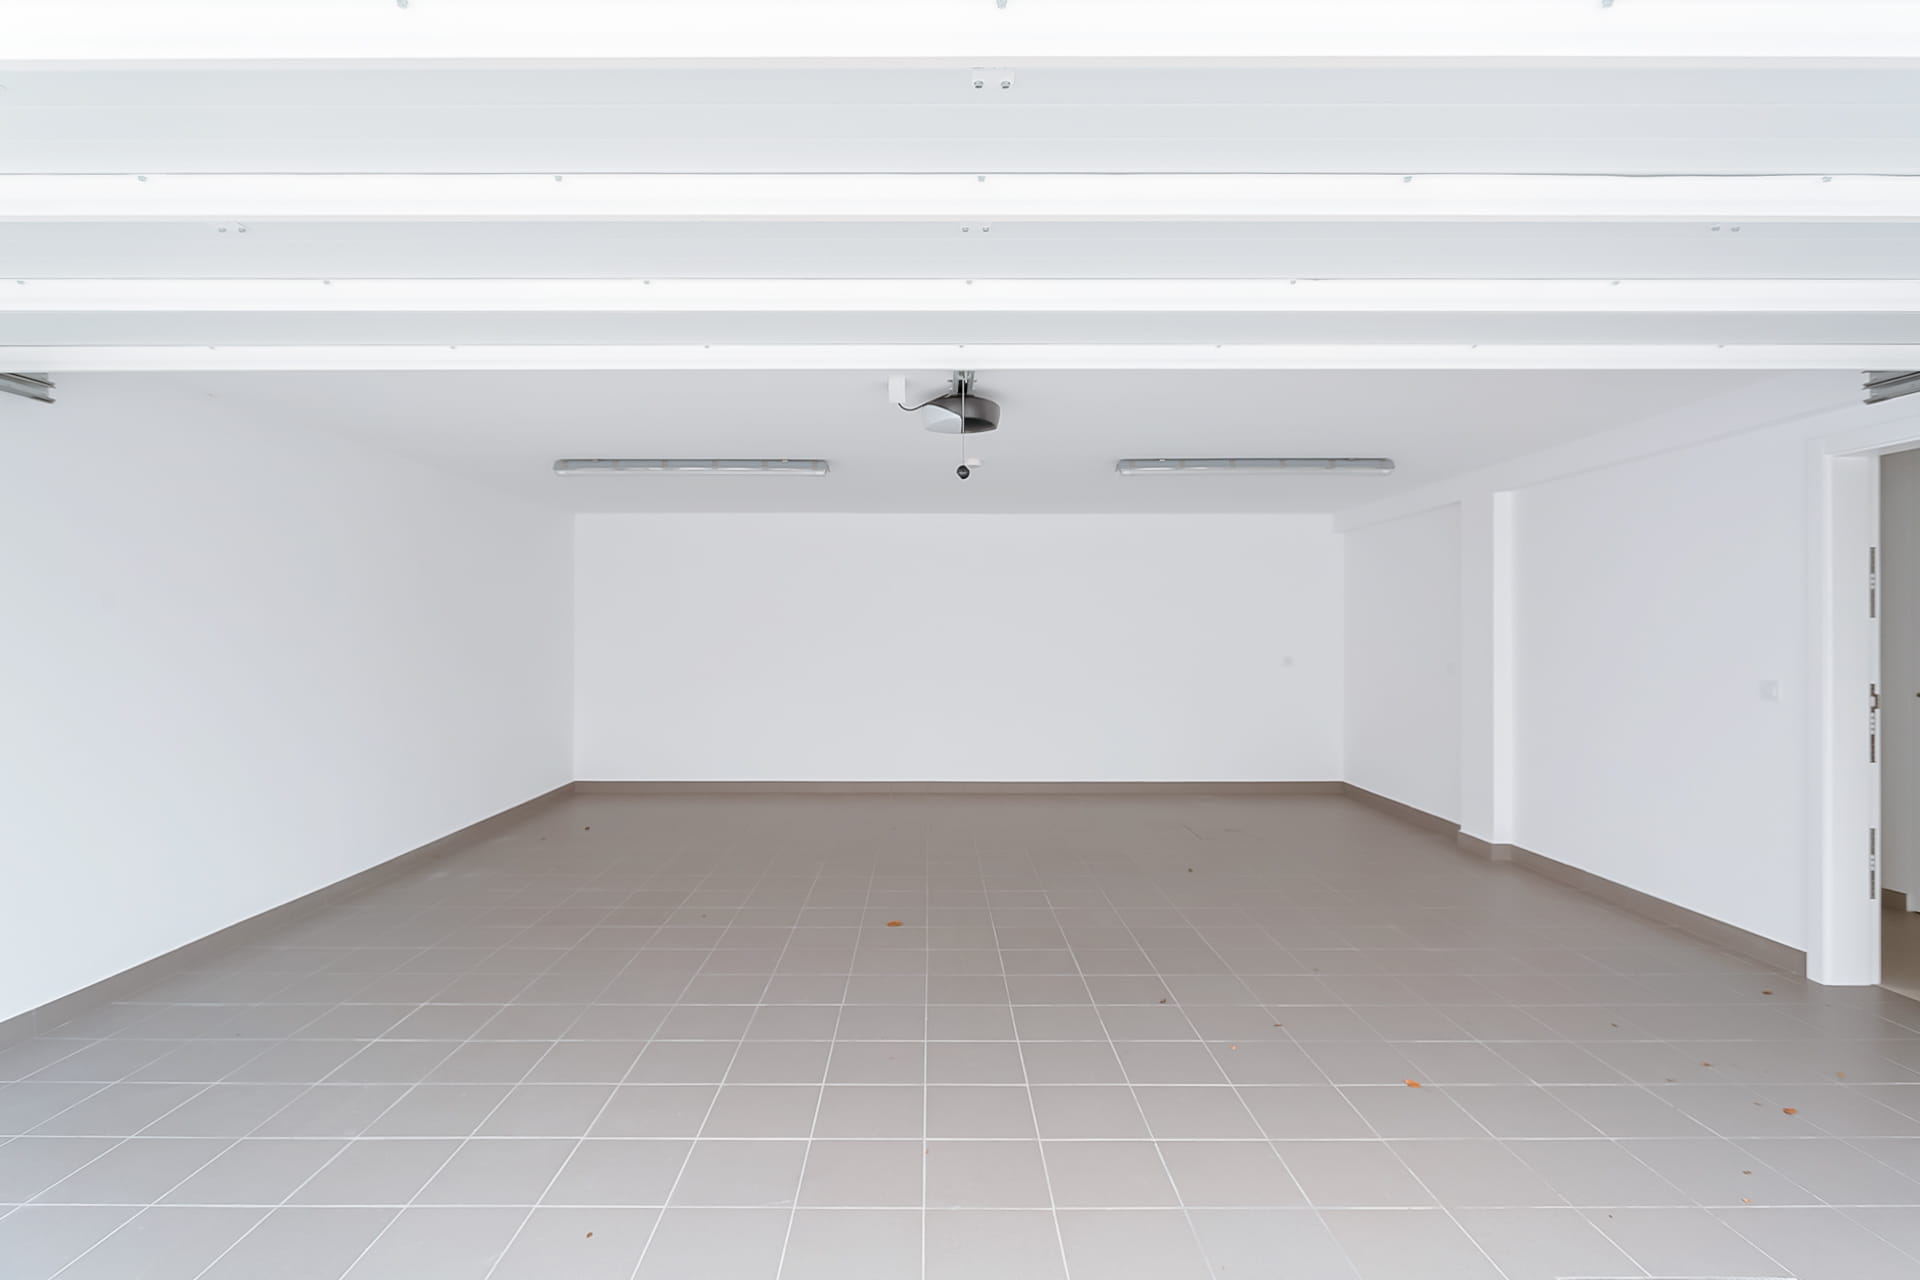 Garagem (48,7 m2) com espaço para 3 viaturas